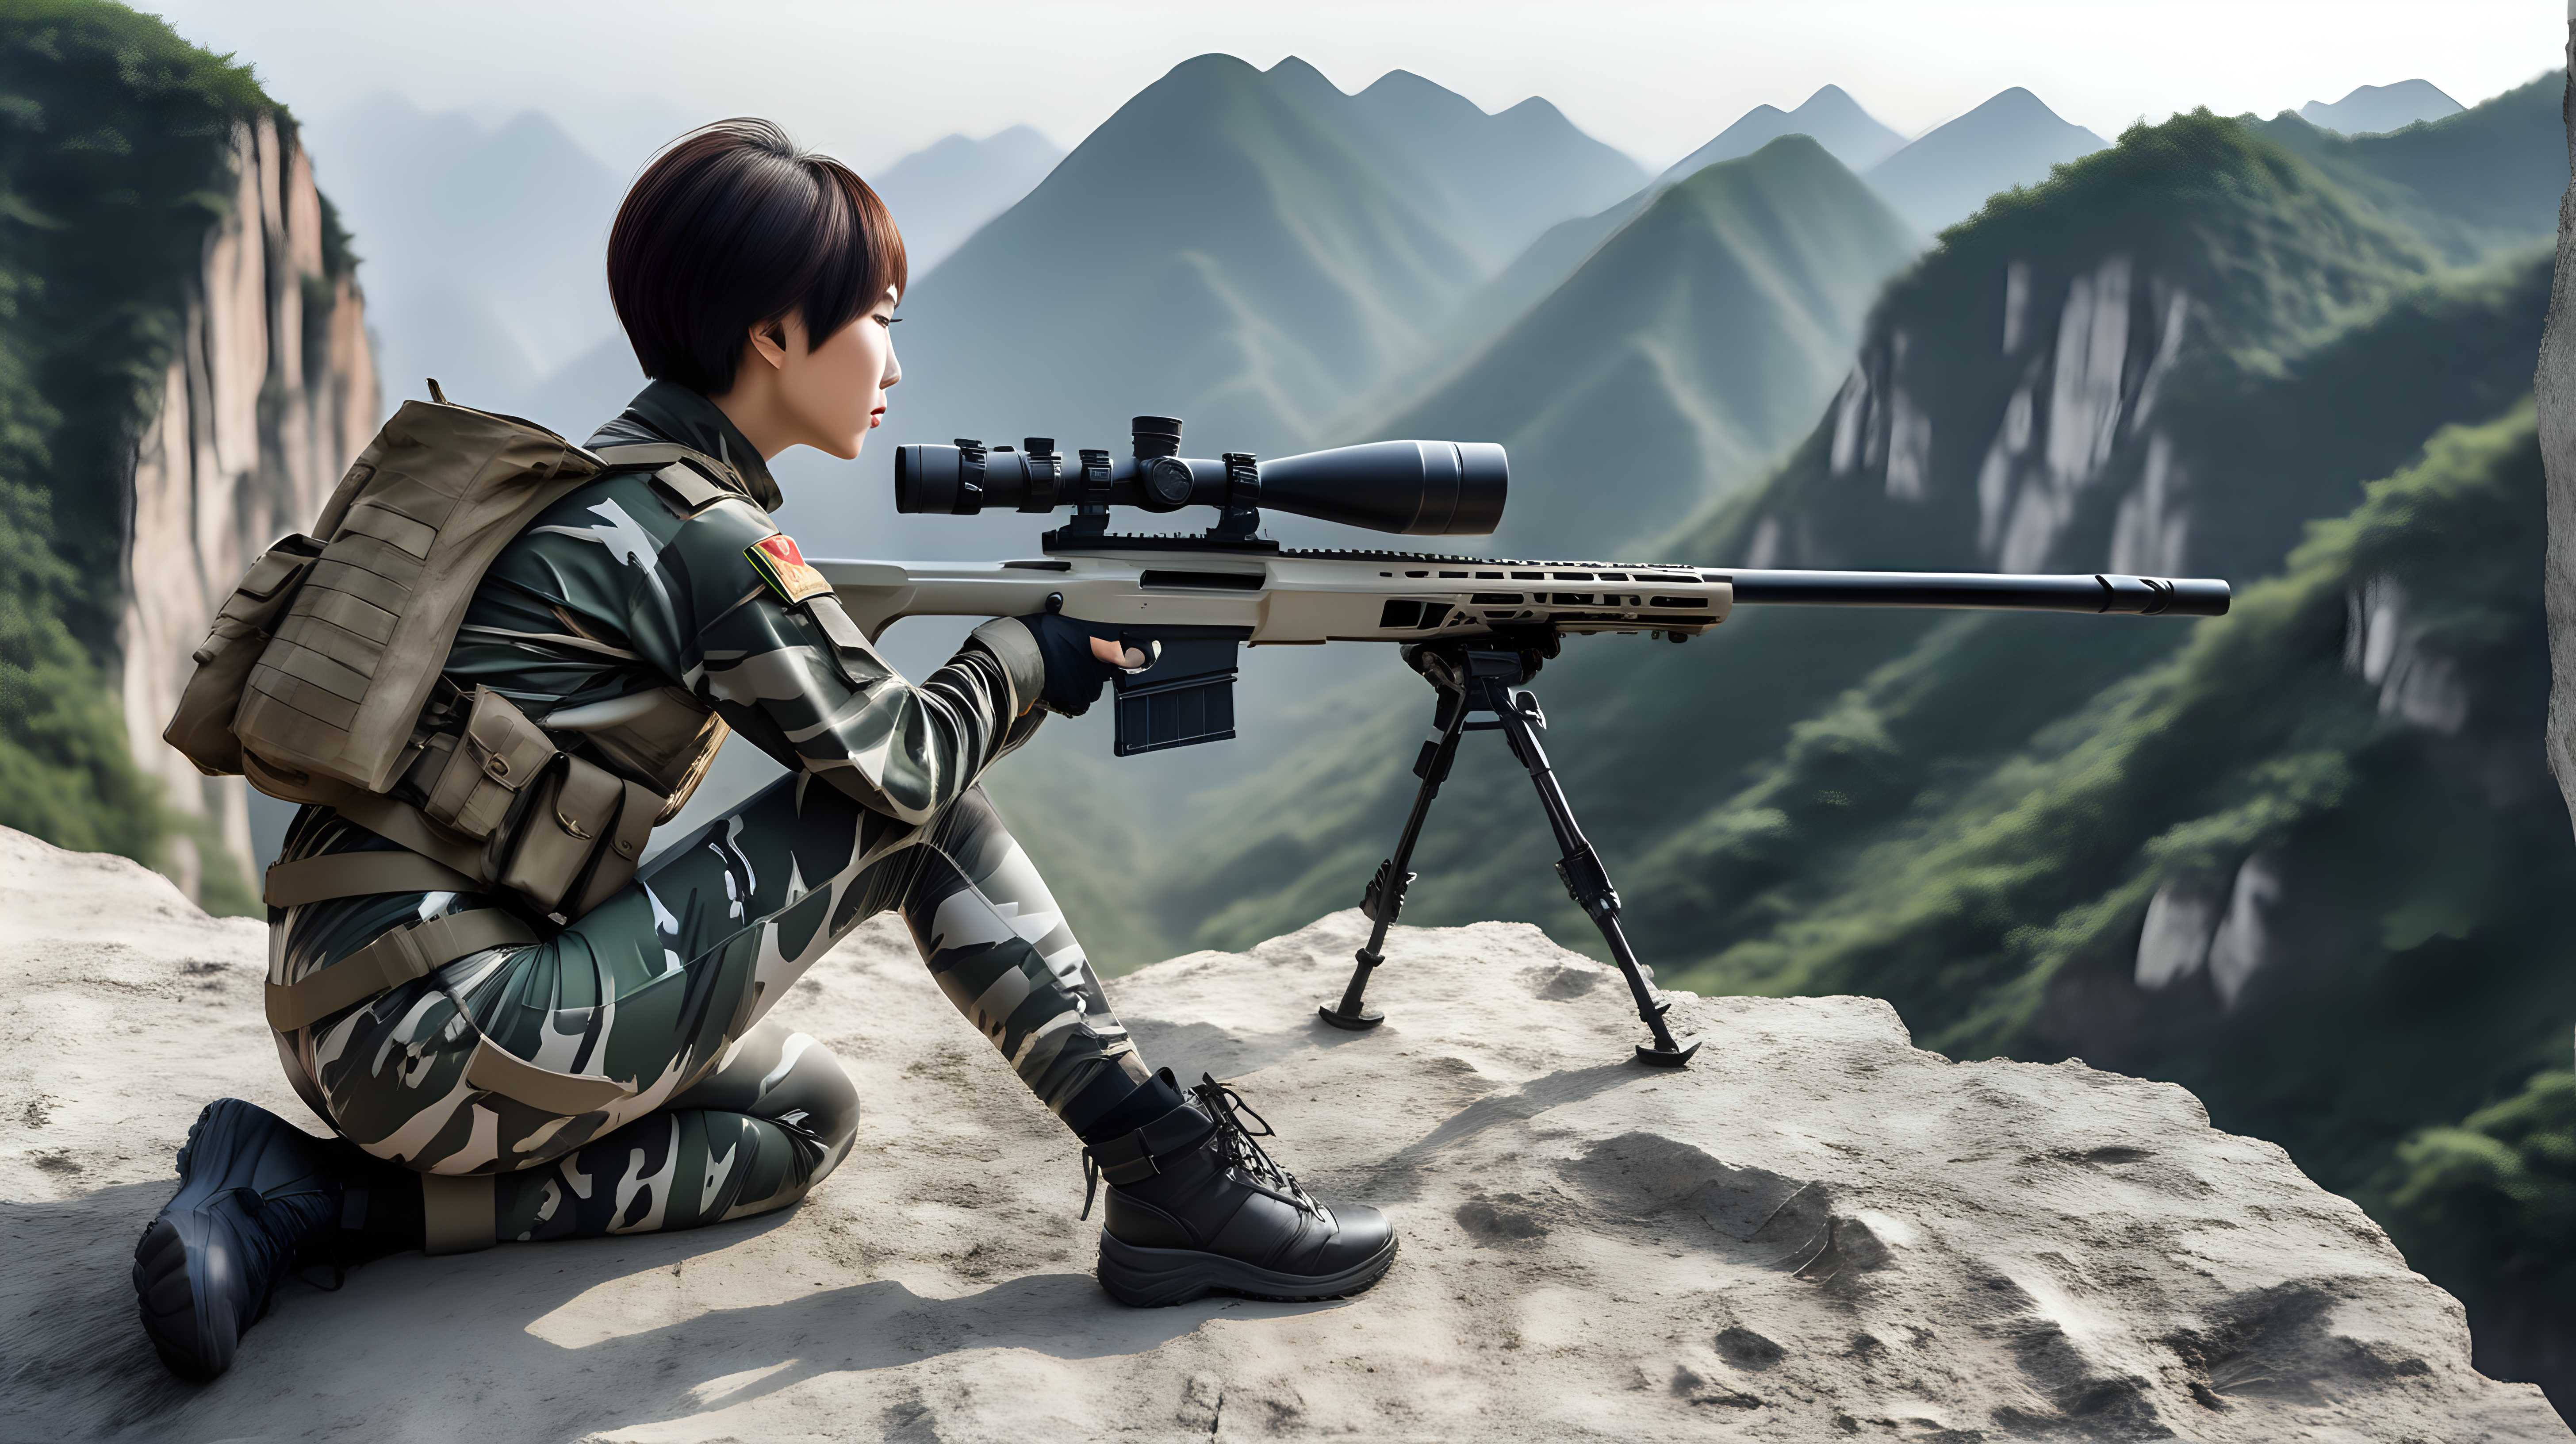 中国女兵
短发
迷彩紧身裤
趴在悬崖边上
用巴雷特狙击枪瞄准
侧后视角